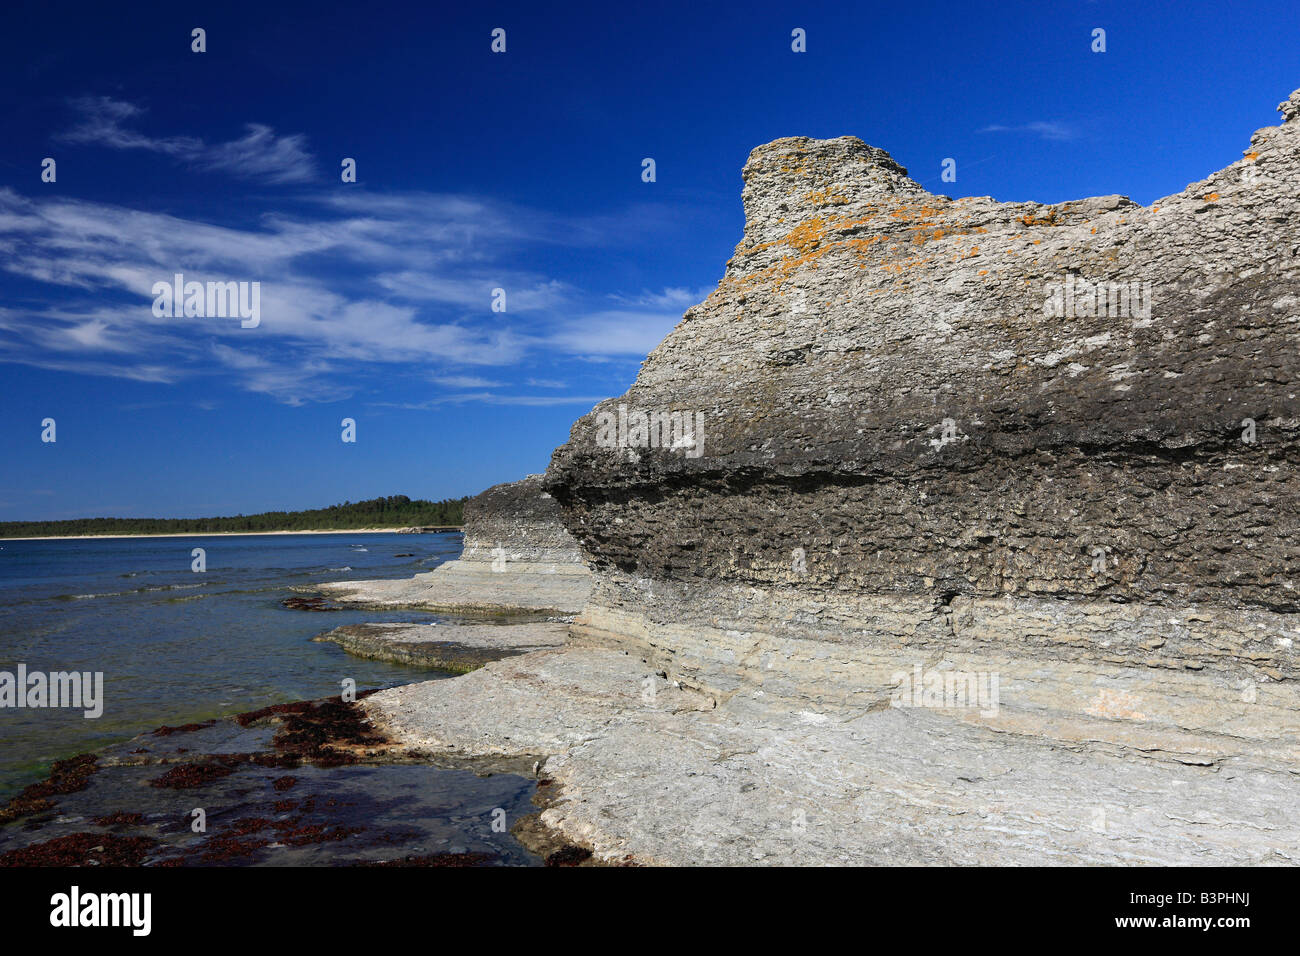 Rauken von Byrum, freestanding sandstone pillars washed out by the sea, Byrum, Oeland, Kalmar County, Sweden, Scandinavia Stock Photo